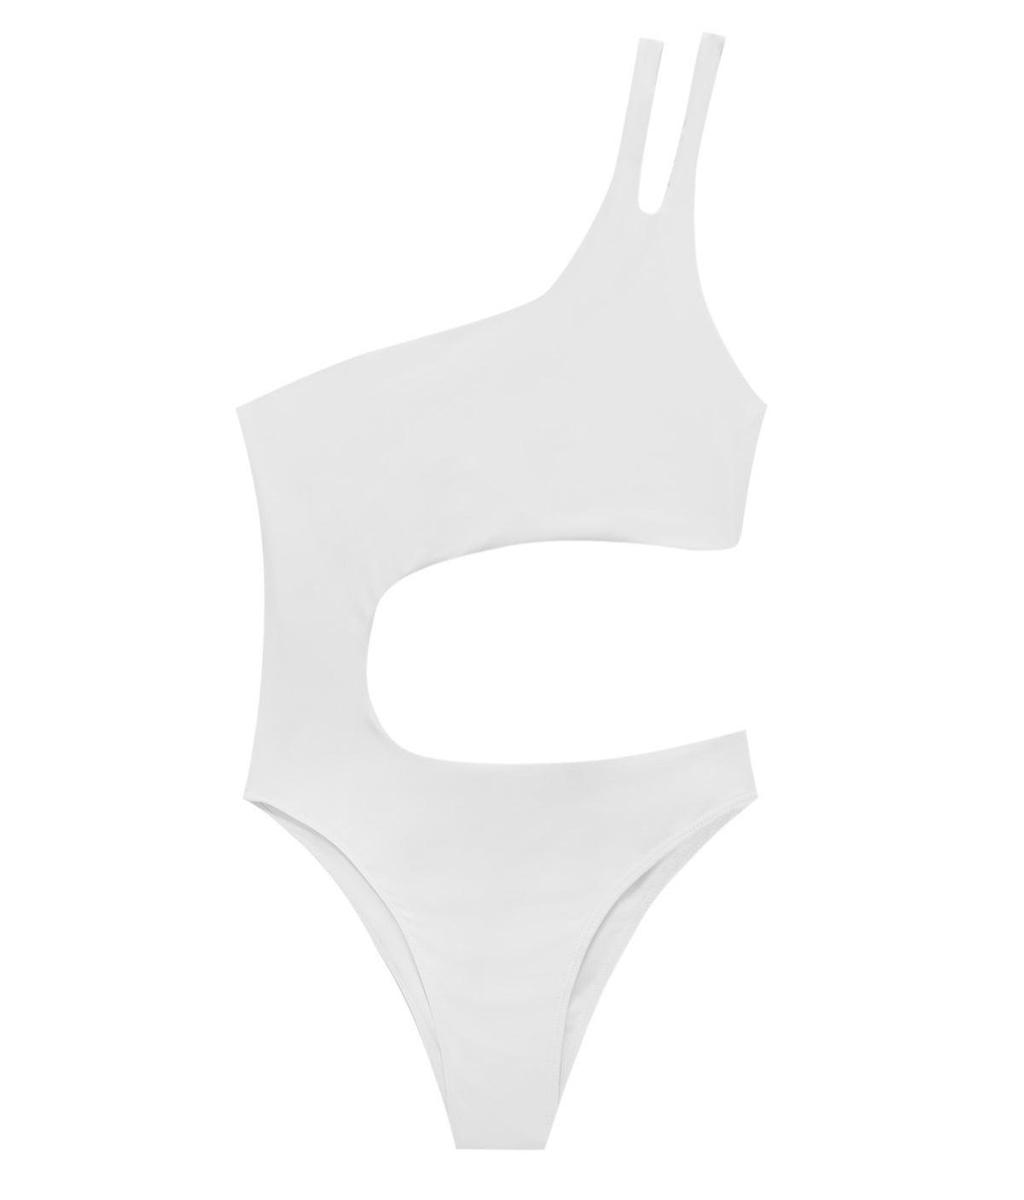 Trikini blanco asimétrico con un solo tirante con arandela y en tejido ligeramente elástico